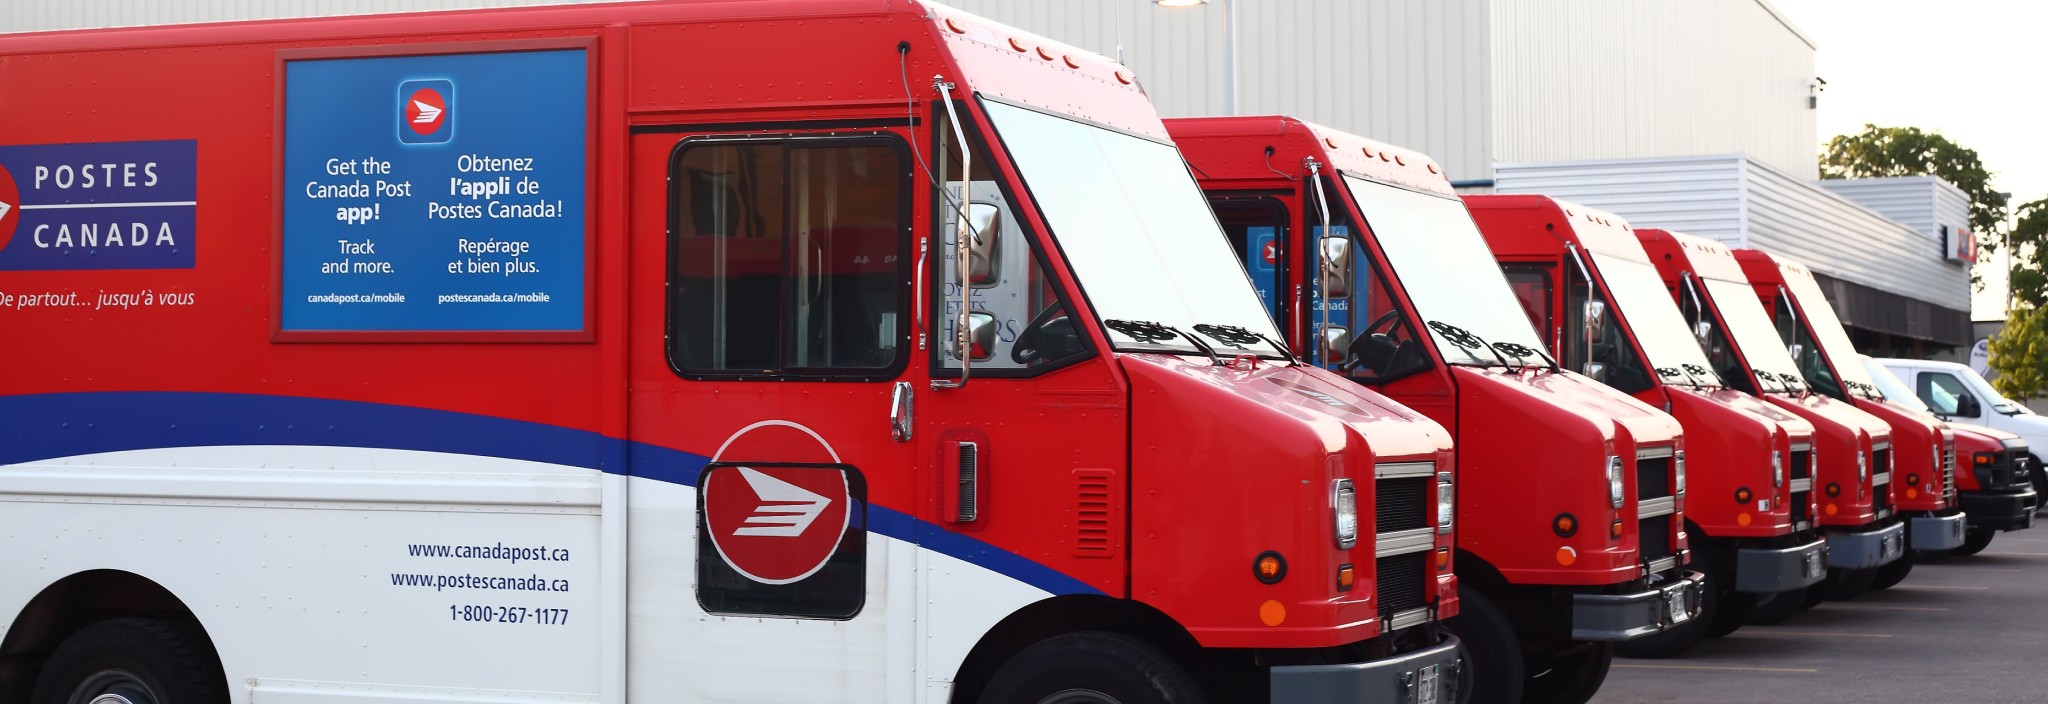 Camions de livraison de Postes Canada stationnés en rangée